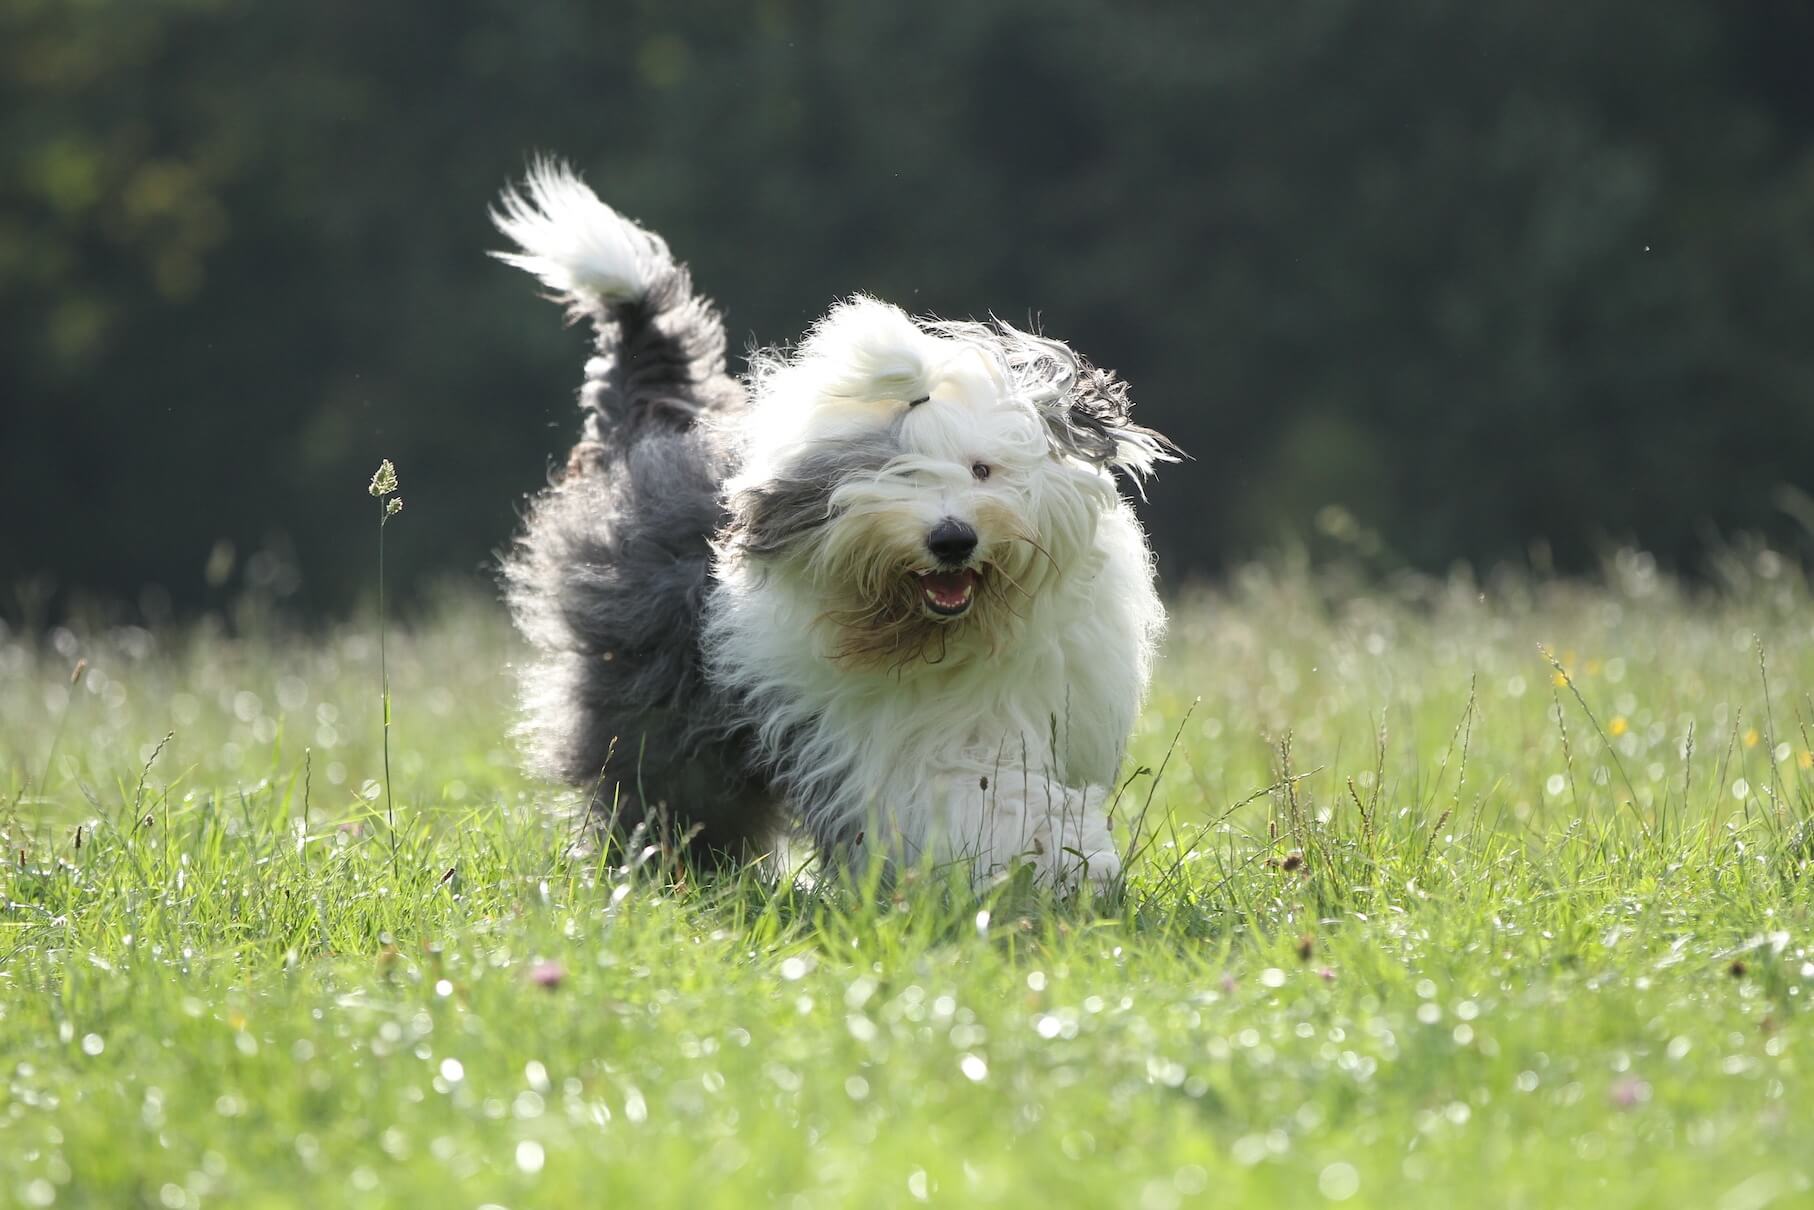 A Bobtail dog running through the grass